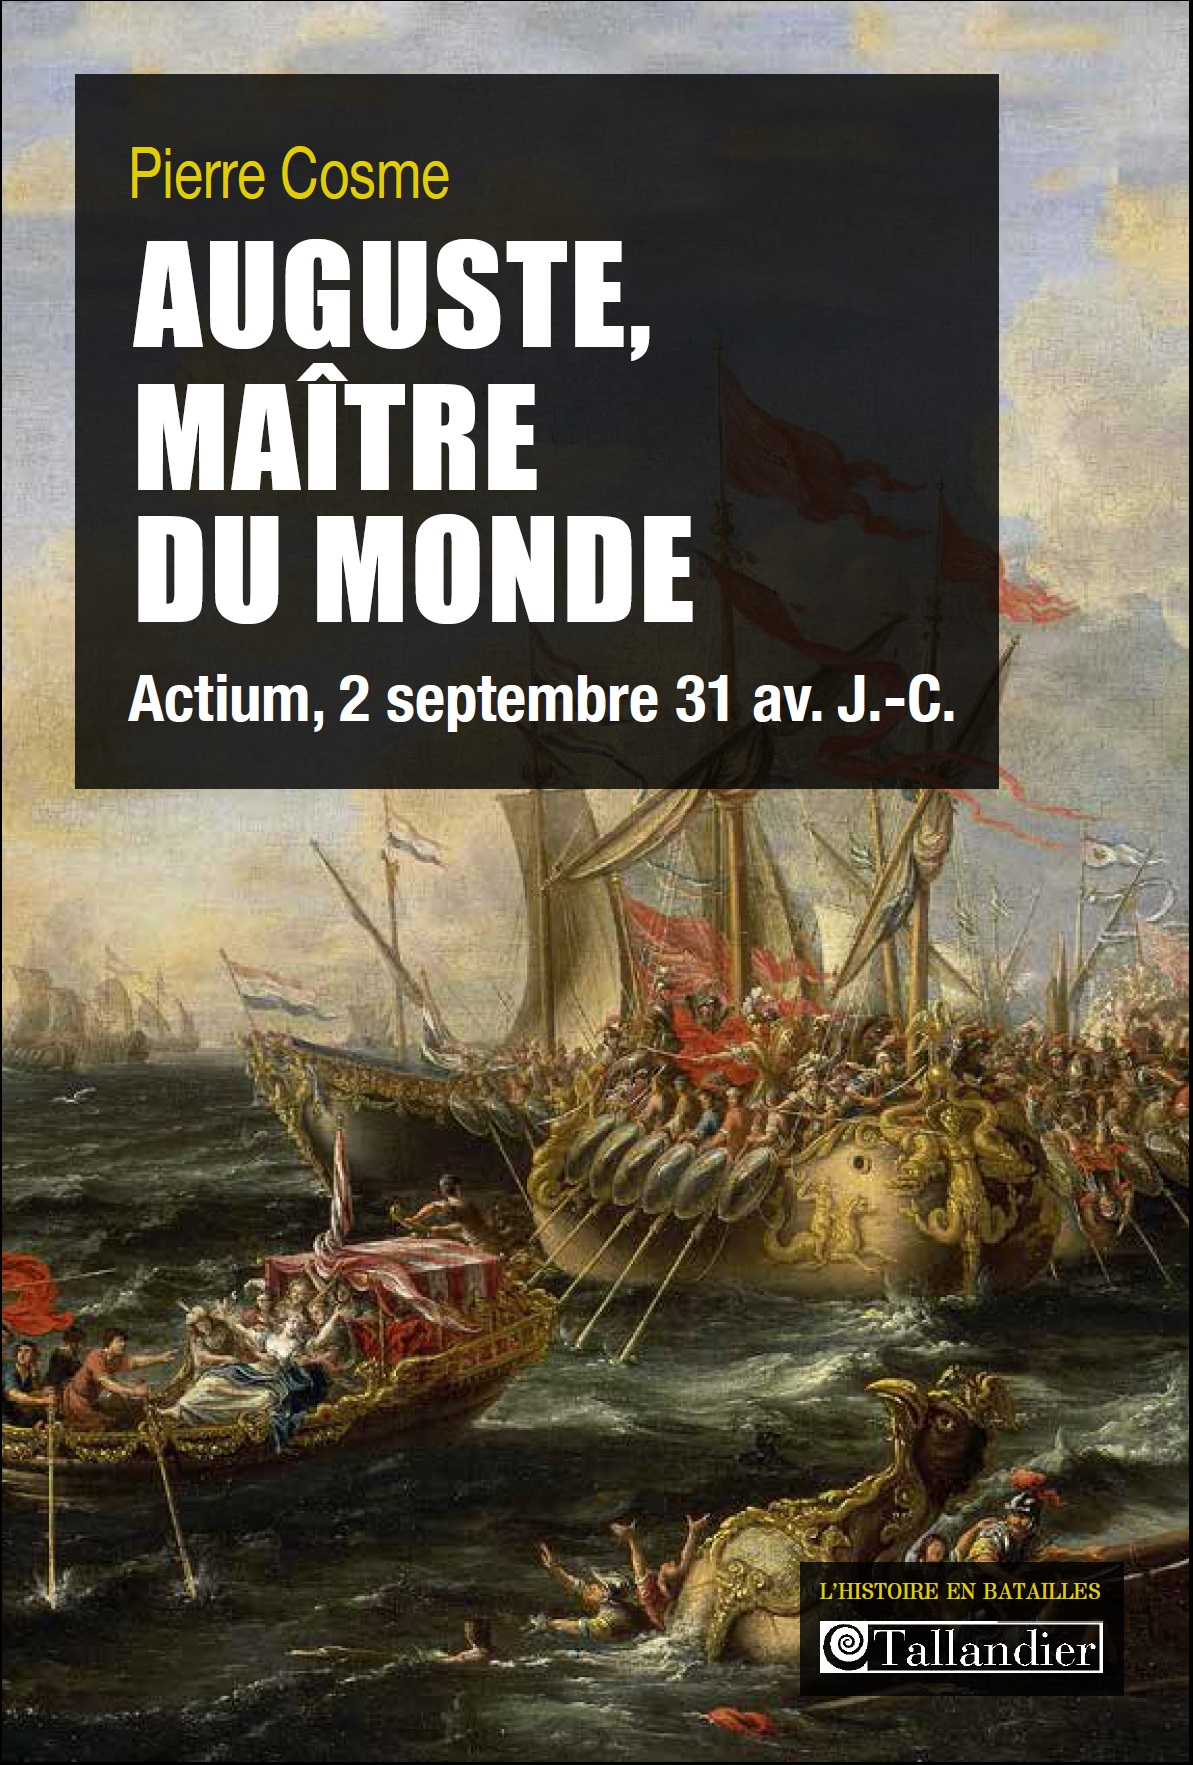 ÉPUISÉ - Auguste, maître du monde. Actium, 2 septembre 31 av. J.-C., 2014, 144 p.